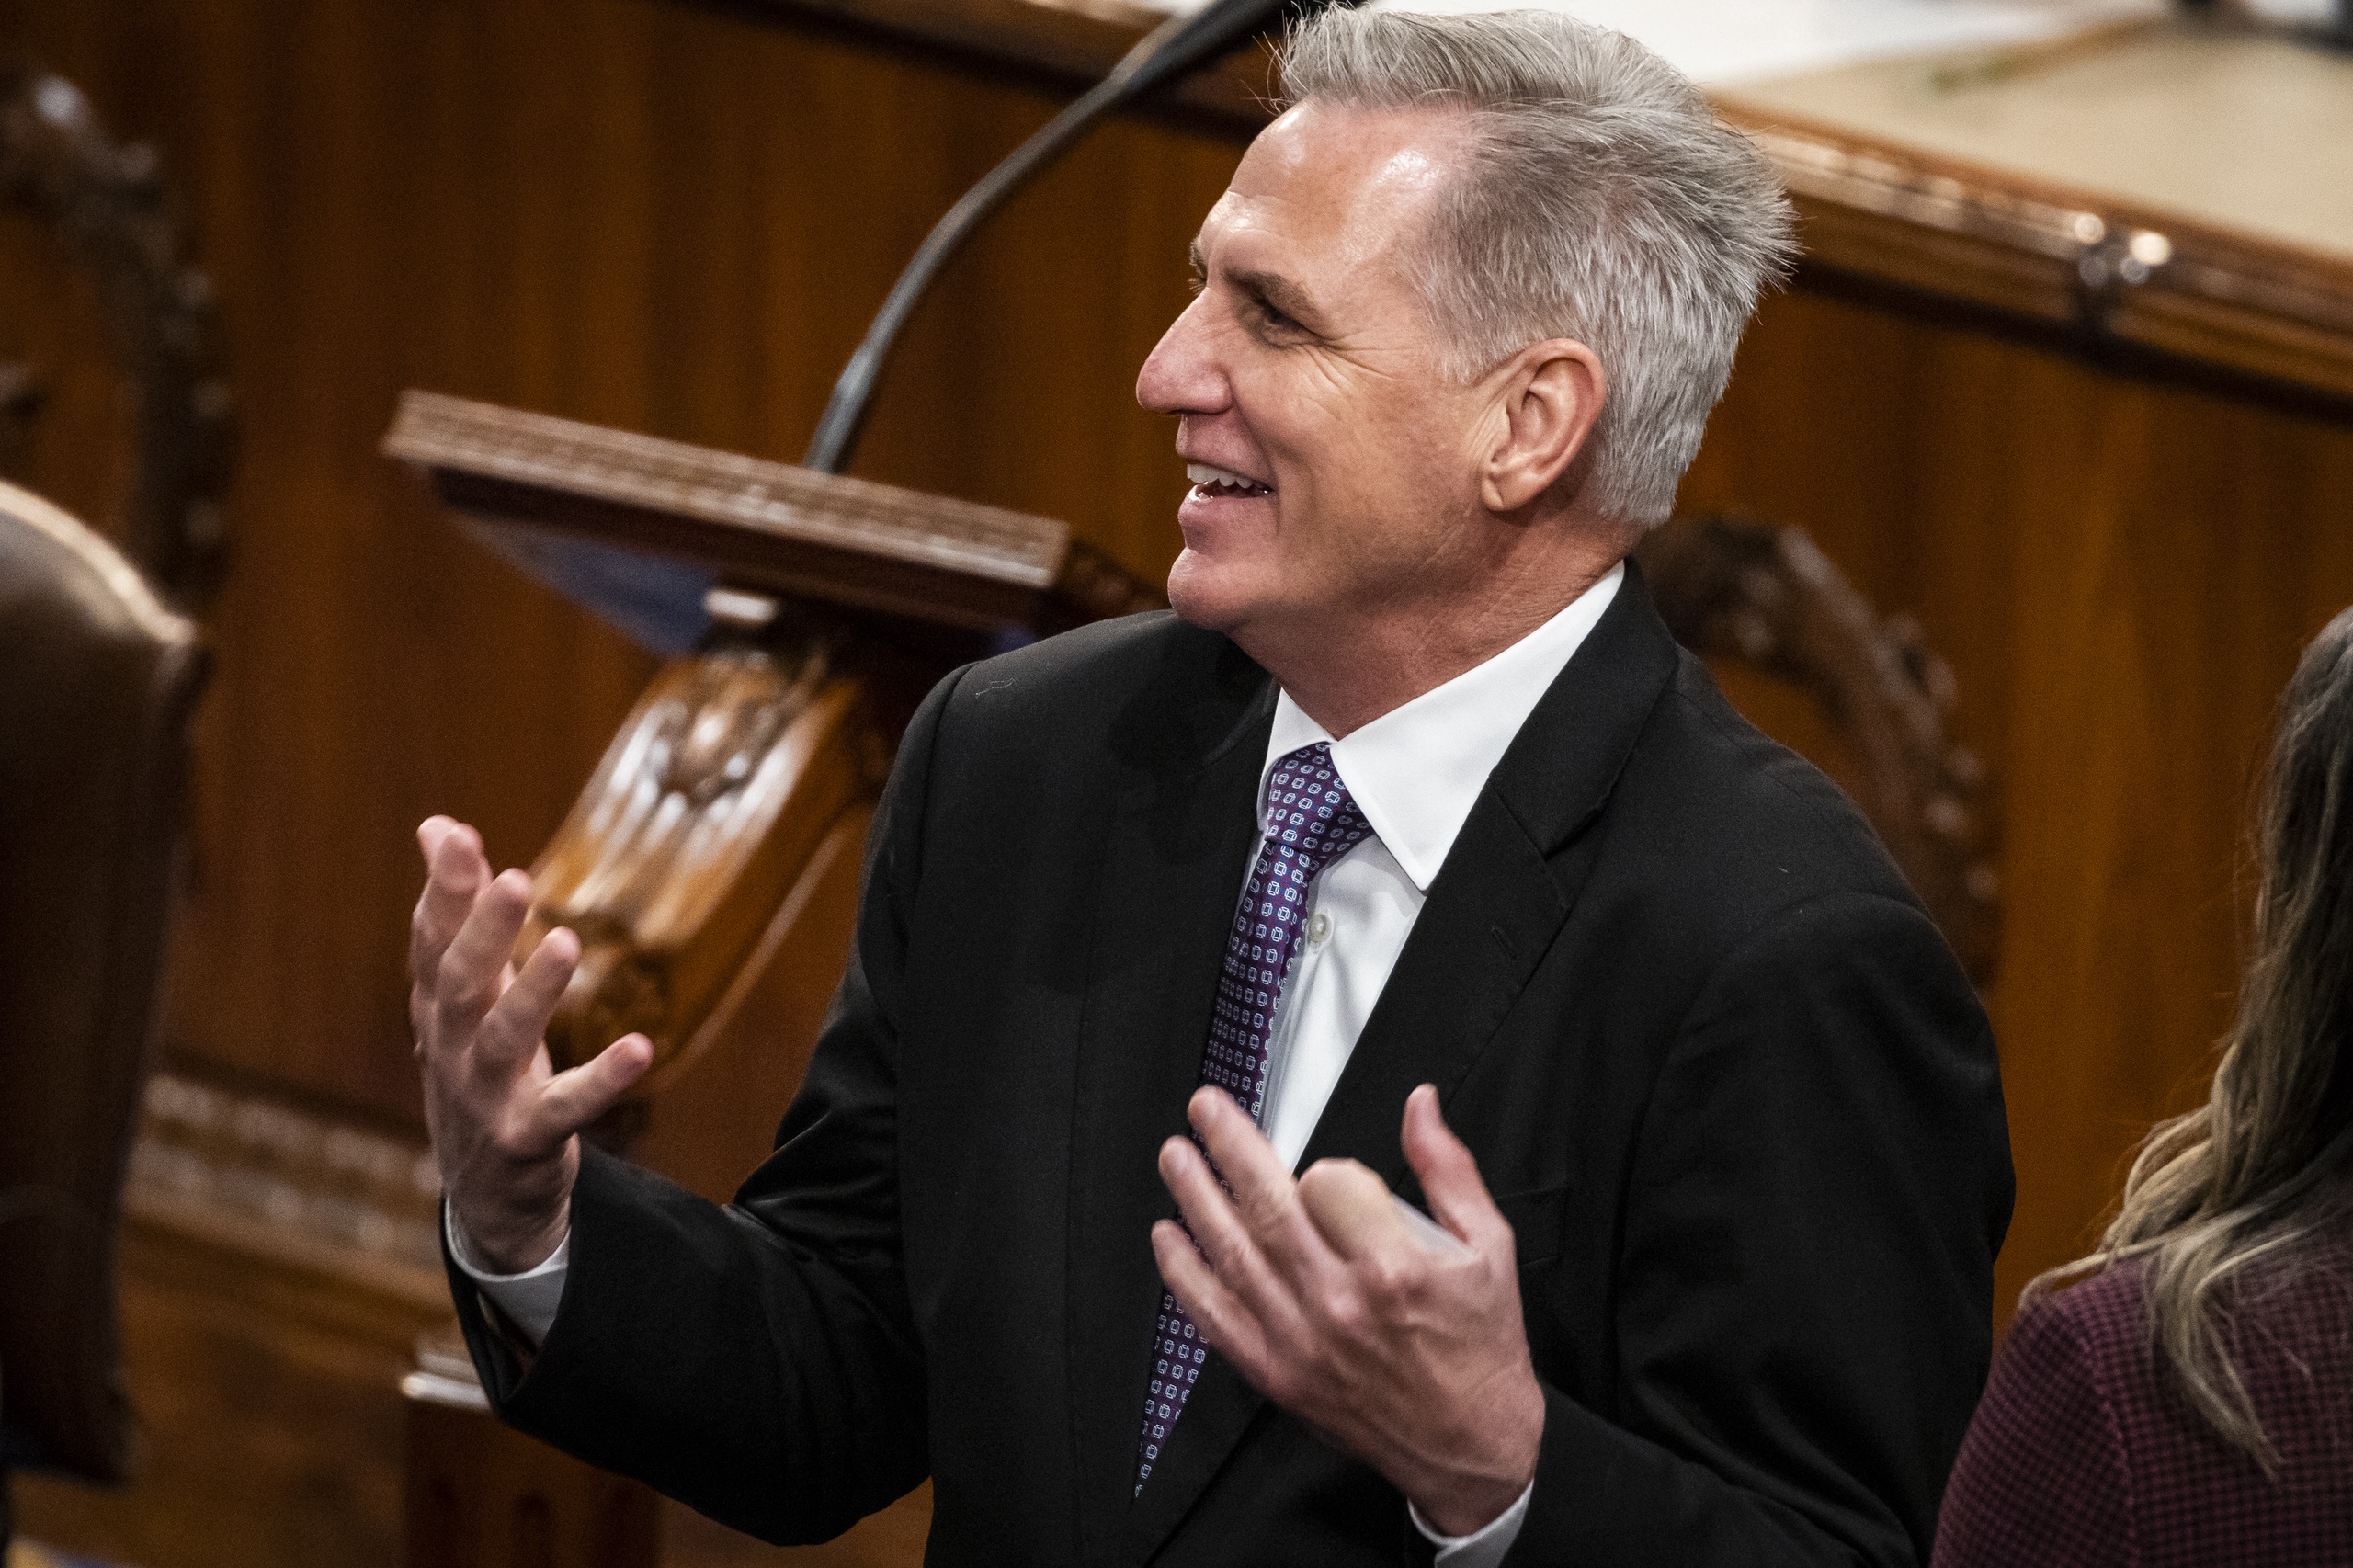 De nieuwe voorzitter van het Amerikaanse Huis van Afgevaardigden Kevin McCarthy brengt naar verwachting komend voorjaar een bezoek aan Taiwan. Dat meldt de nieuwssite Punchbowl op basis van regeringsbronnen. Het zou de tweede keer binnen een jaar zijn dat zo'n hooggeplaatste afgevaardigde het eiland bezoekt.